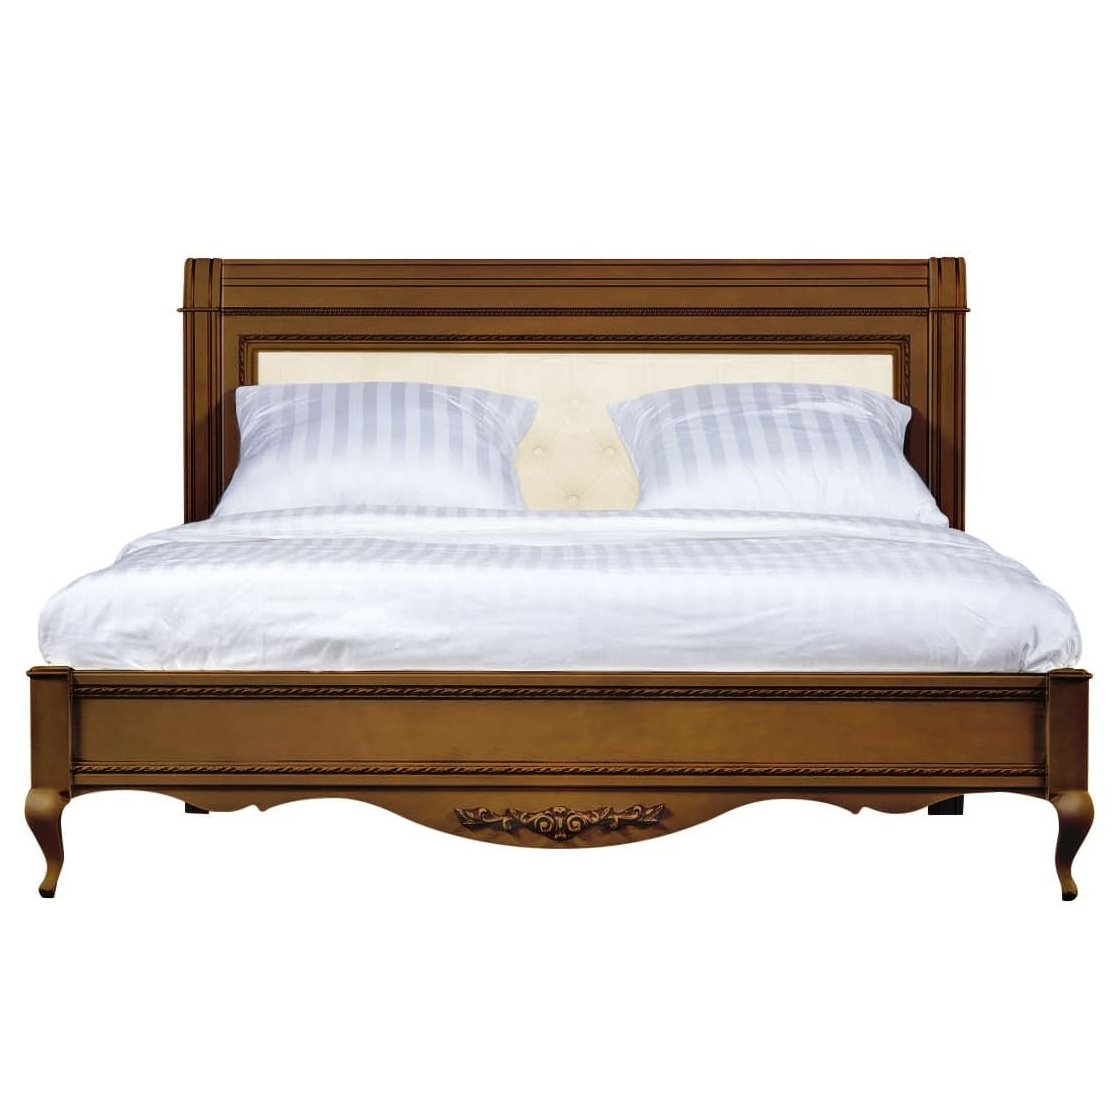 Кровать Timber Неаполь, двуспальная с мягким изголовьем 160x200 см, цвет: орех (Т-520/N)Т-520